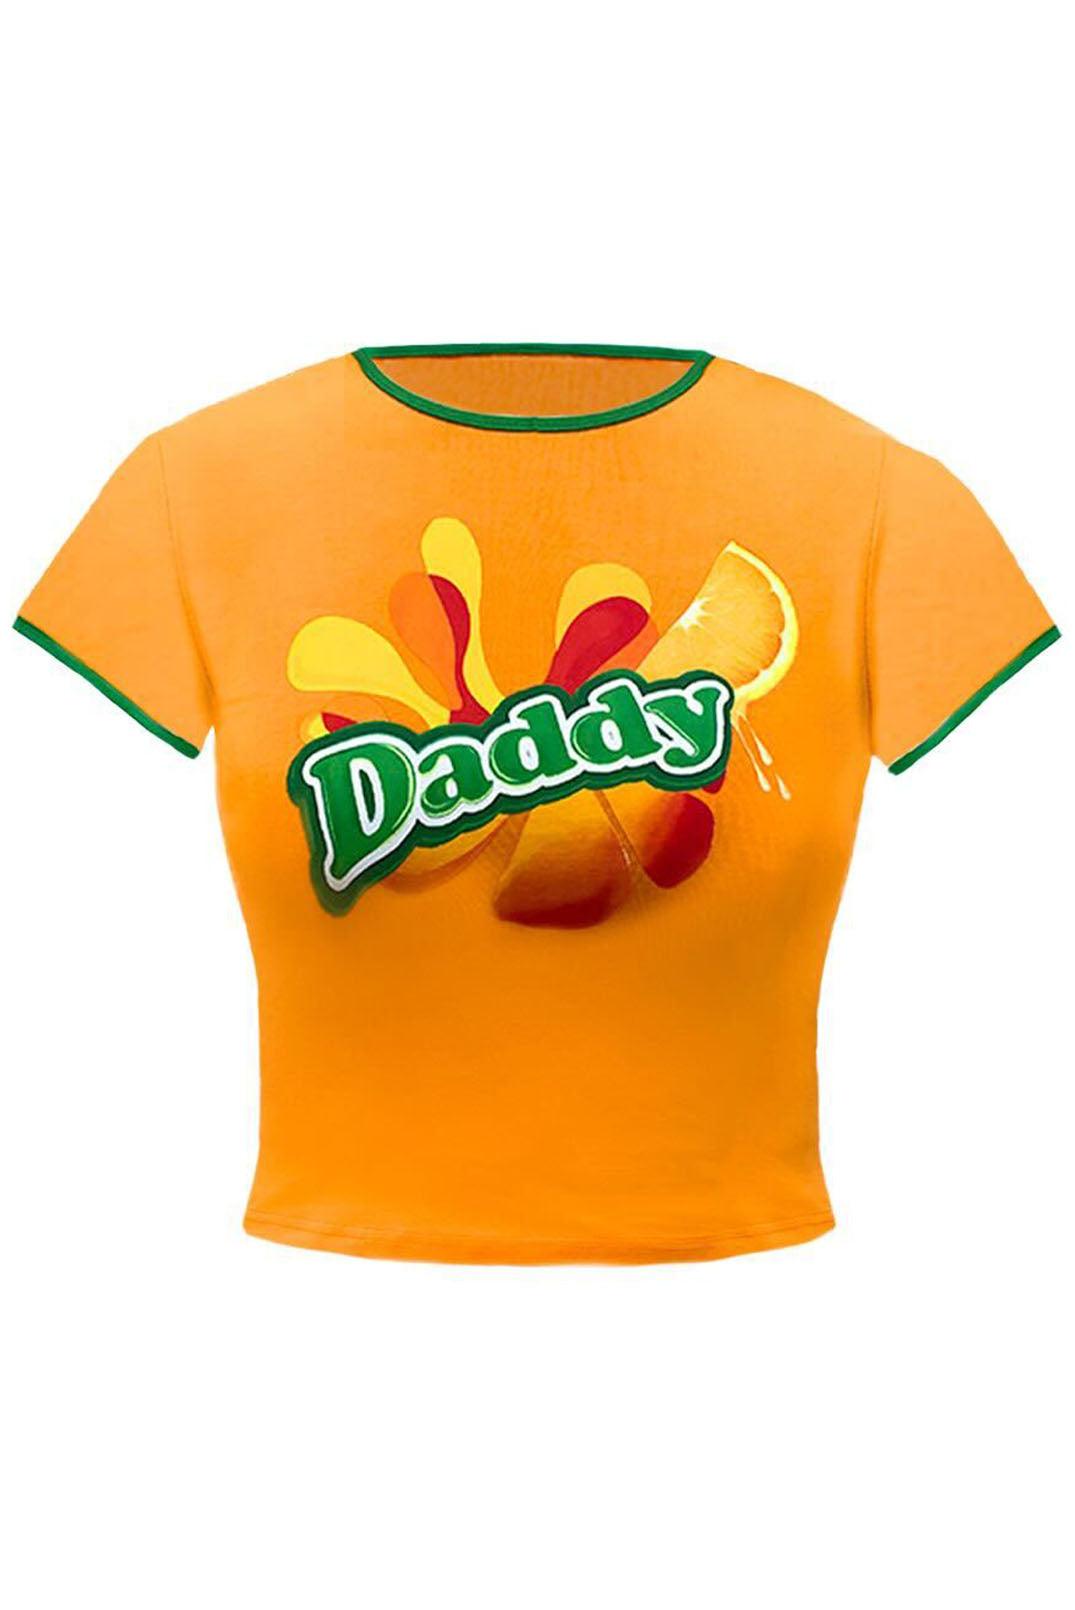 Daddy Orange Mirinda Ringer Baby Tee - Elsie & Fred